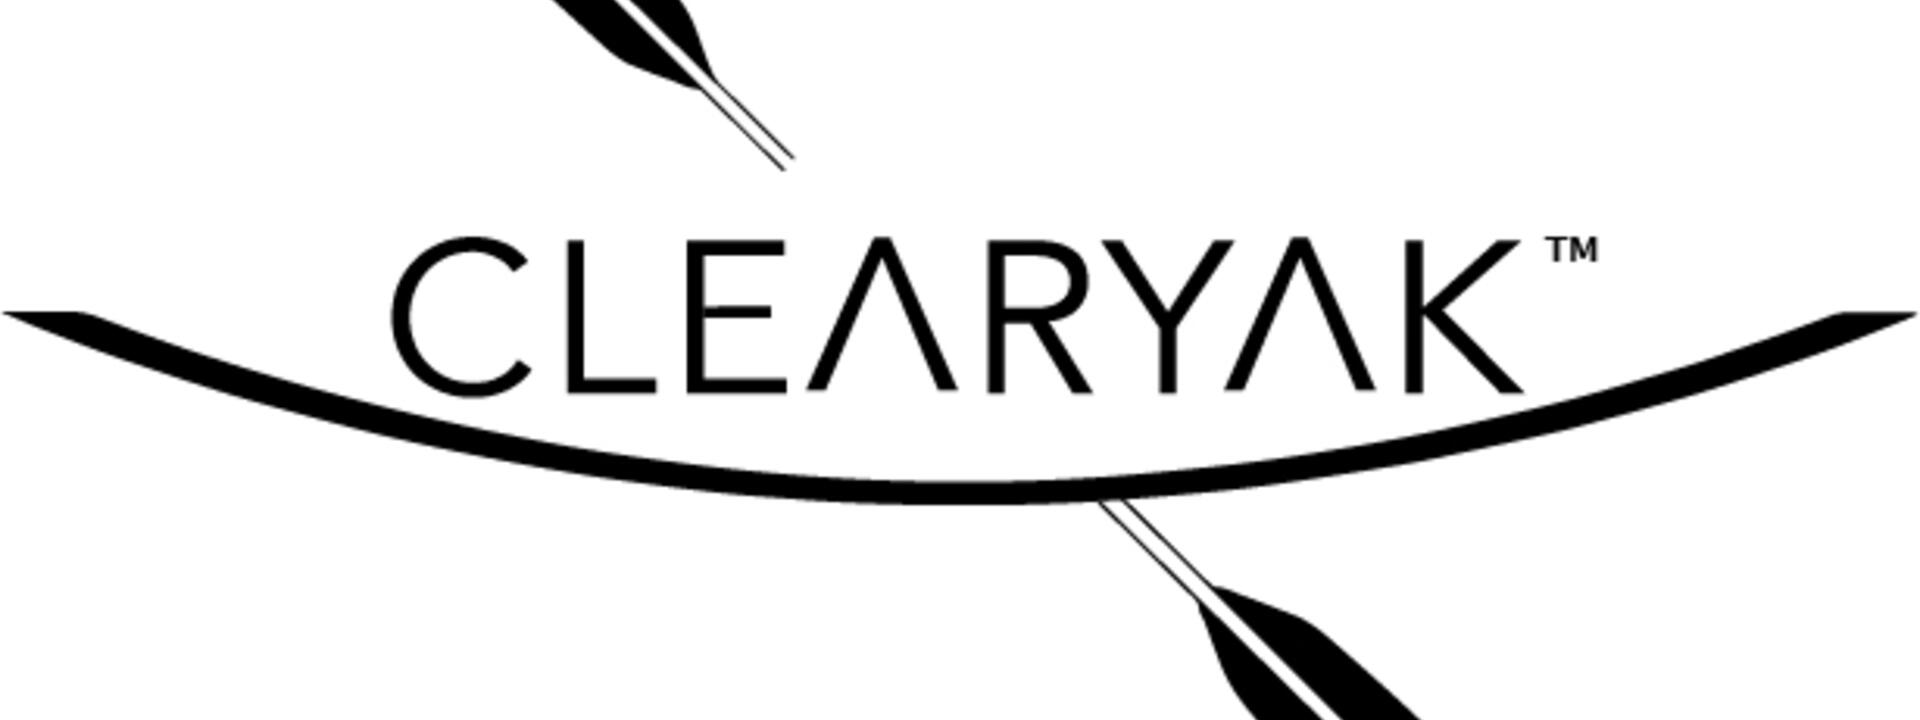 clearyak-logo003.jpg